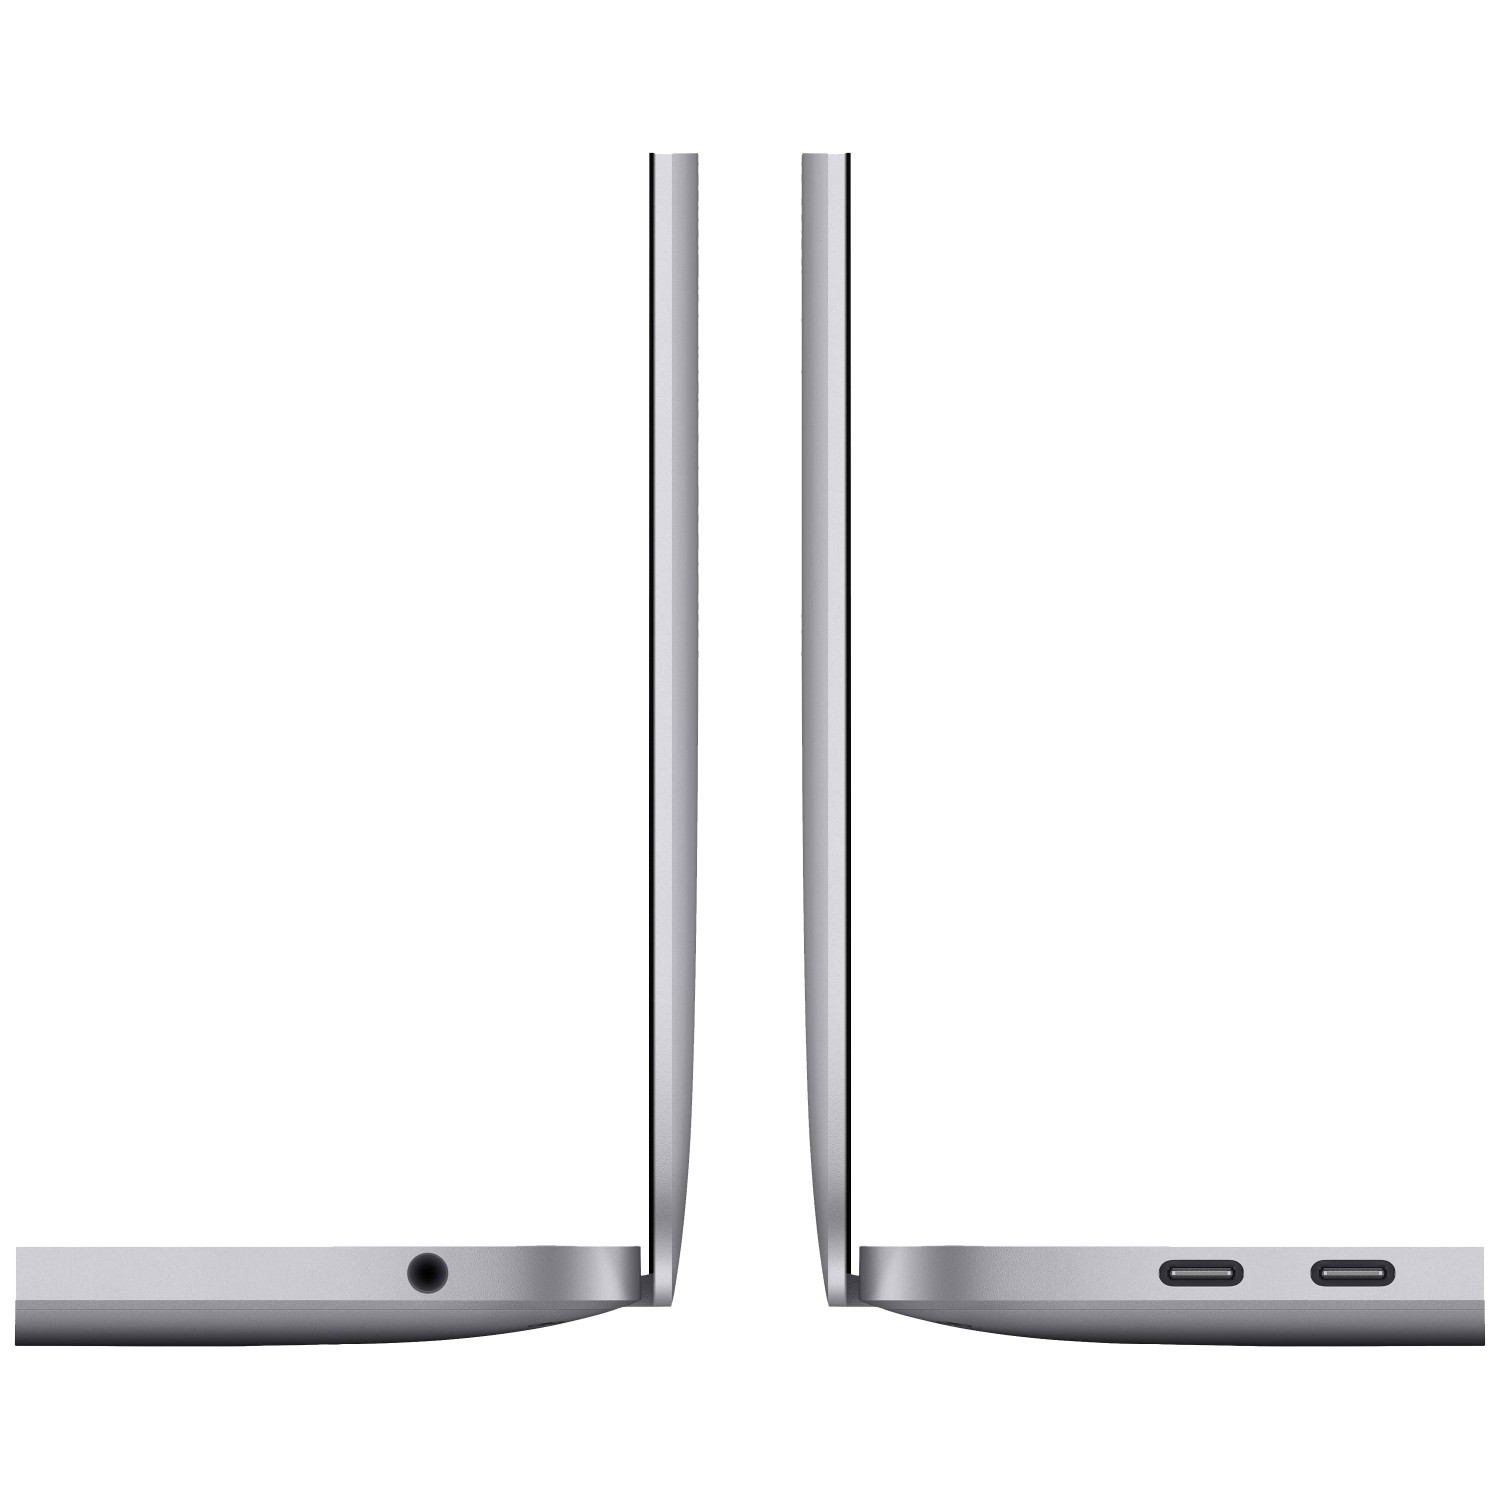 لپ تاپ Apple MacBook Pro 13 2020 CTO - Space Grey - C-4